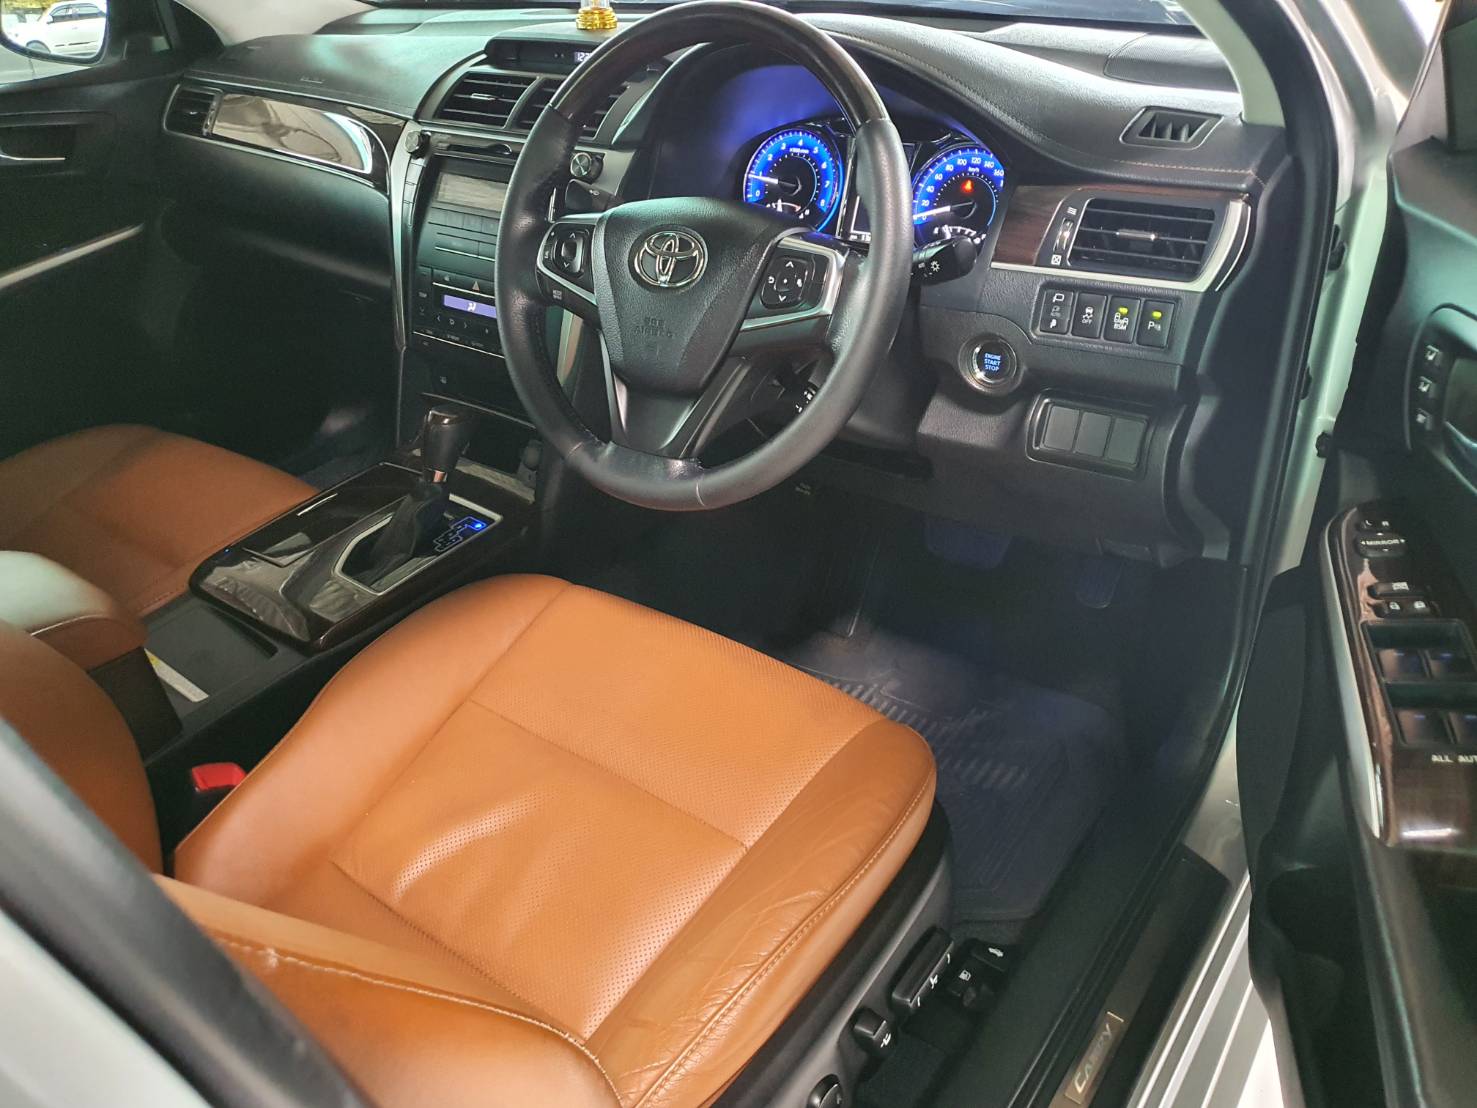 Toyota Camry 2.0G ปี 2018 สีบรอนซ์เงิน Auto มือ1 เช็คศูนย์